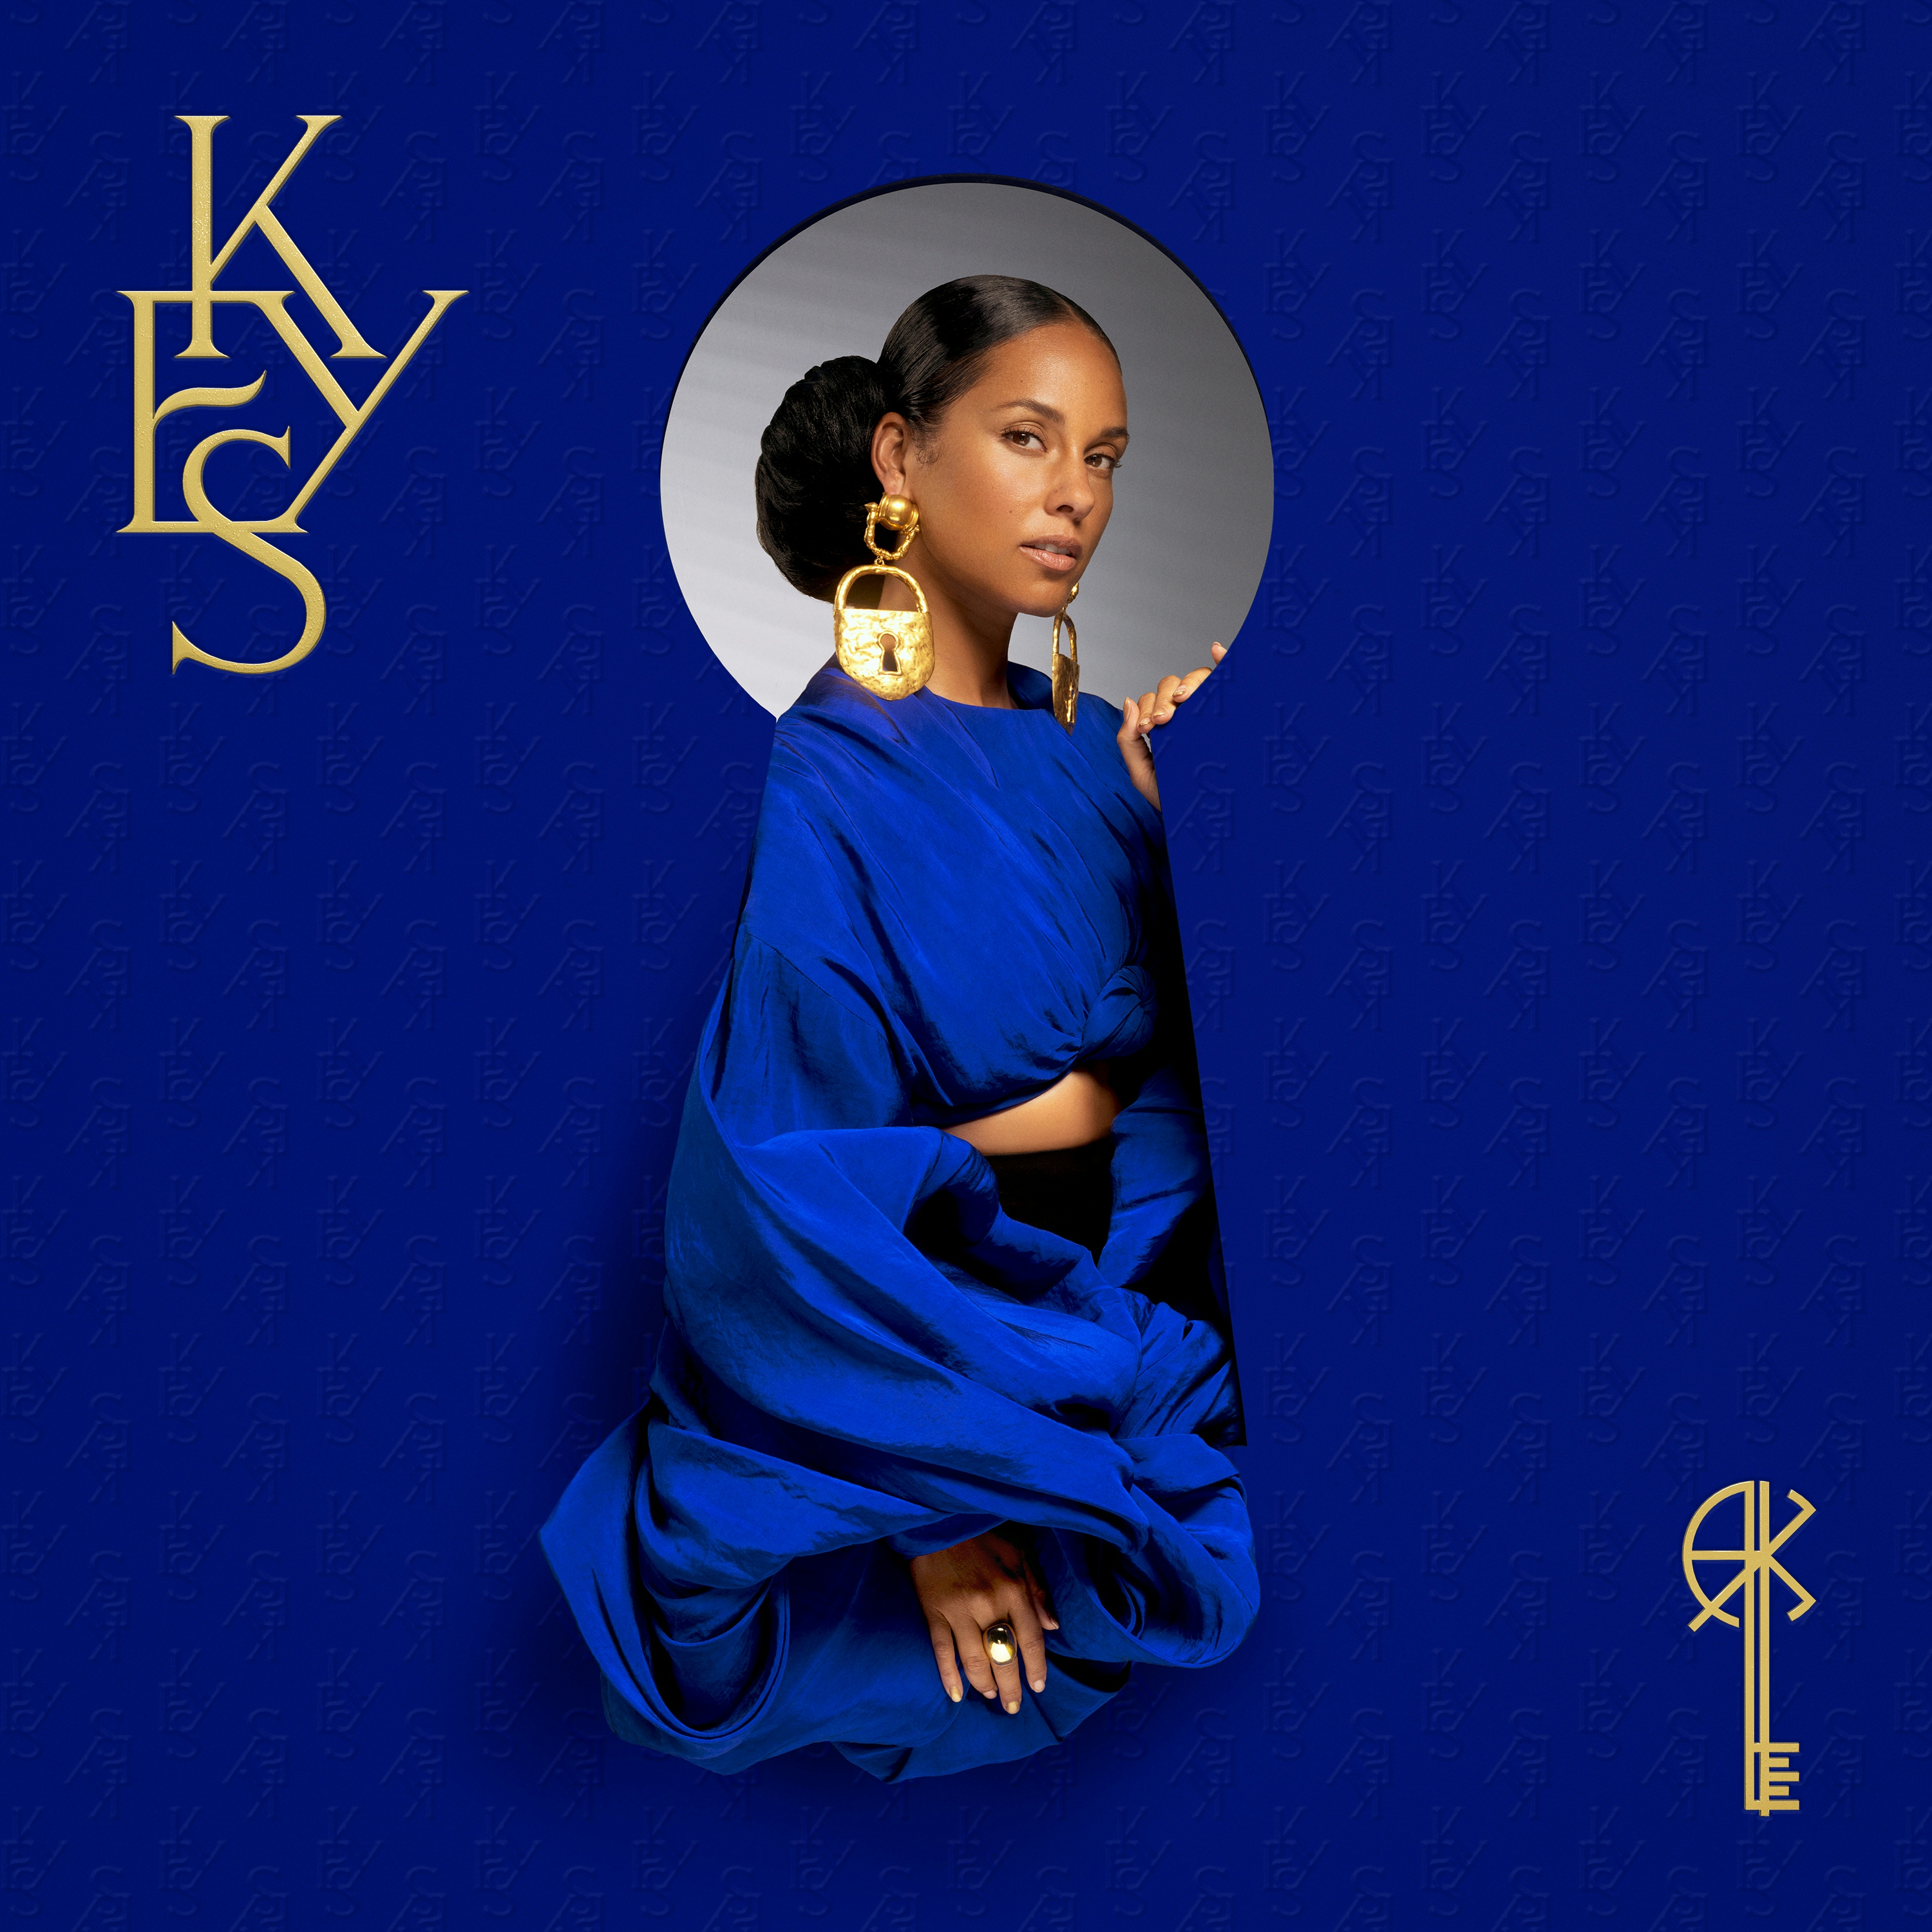 Album artwork for Album artwork for KEYS by Alicia Keys by KEYS - Alicia Keys